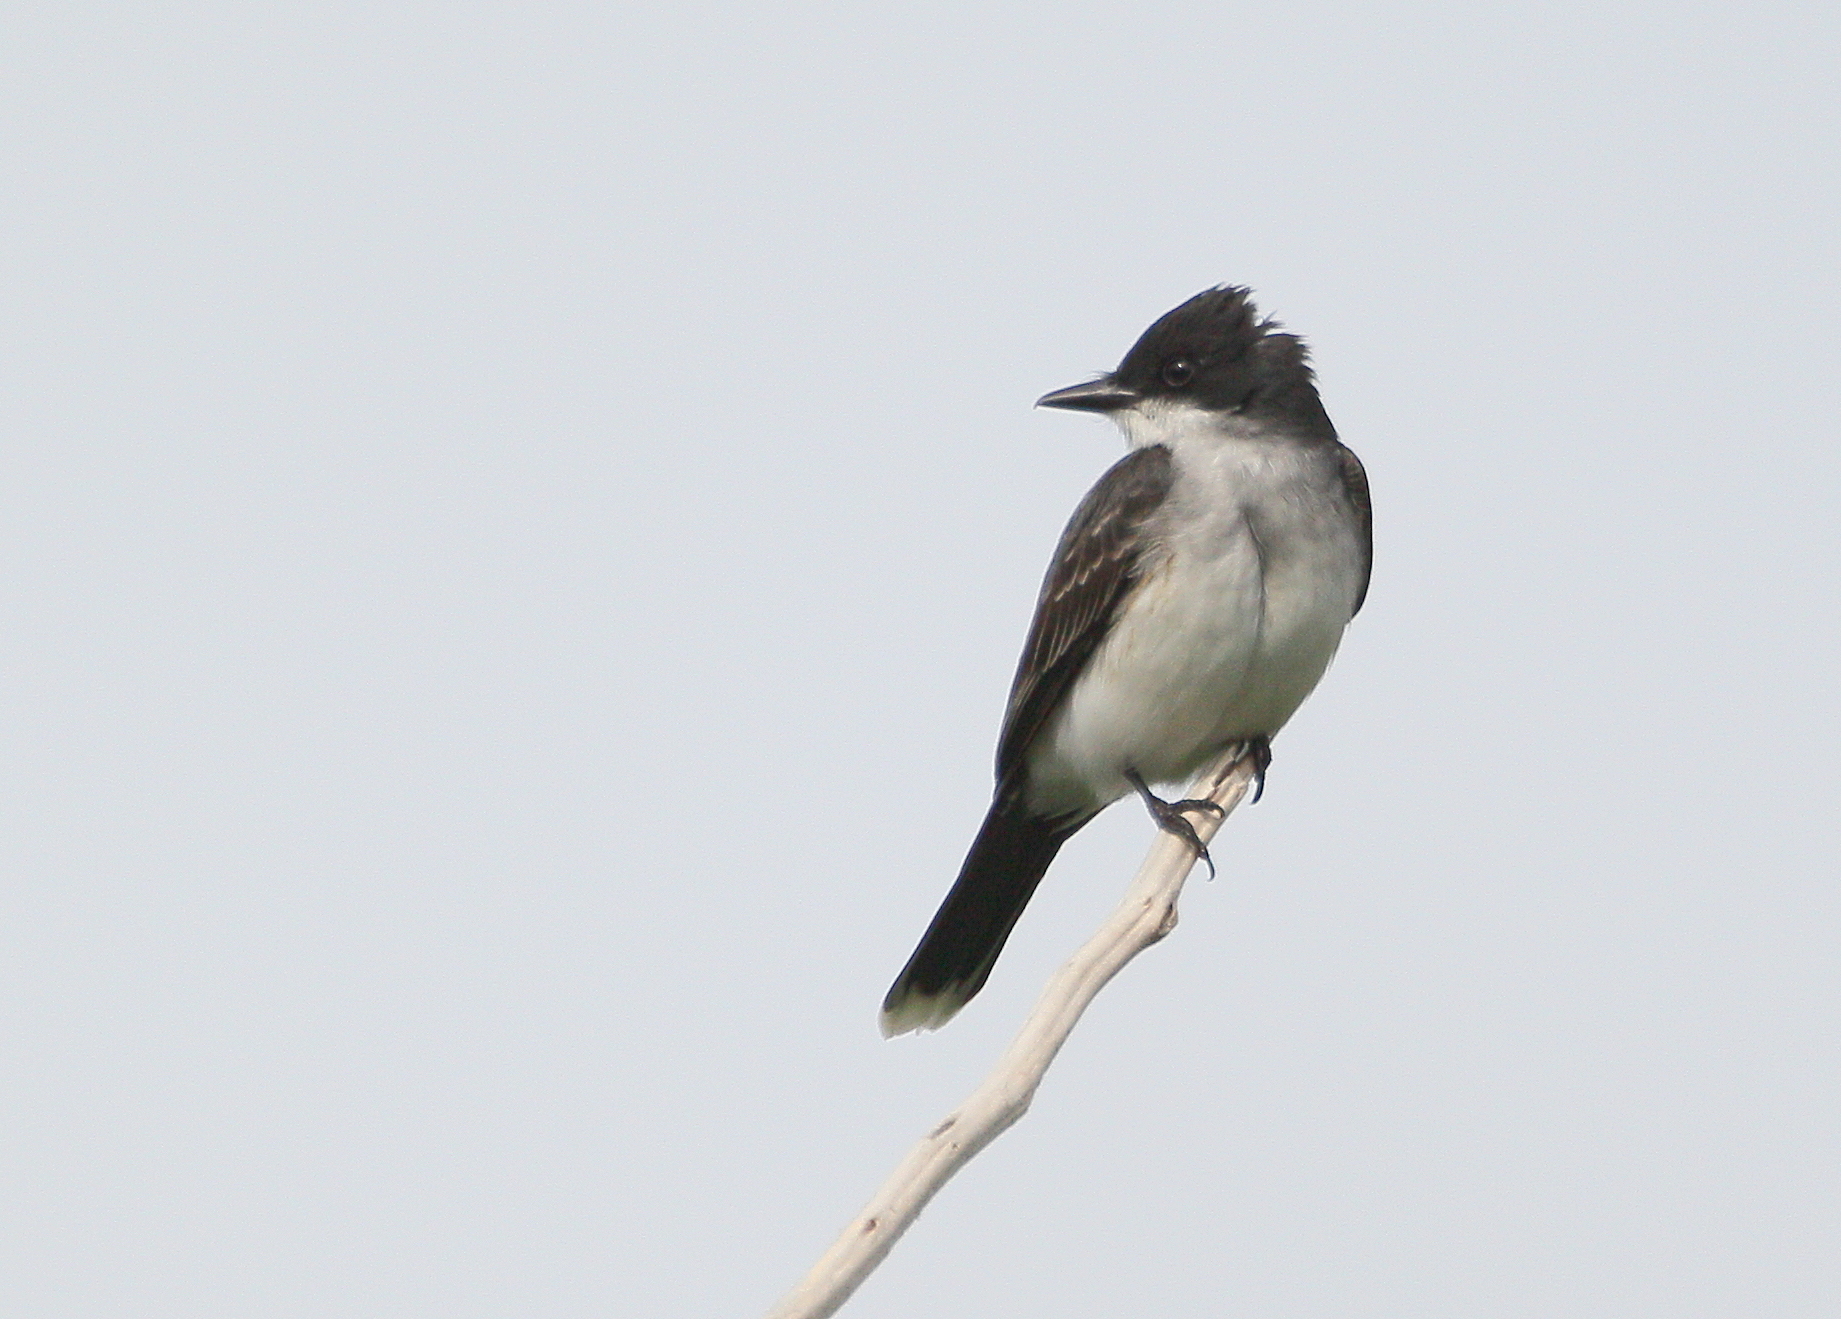 Eastern Kingbird, near nest